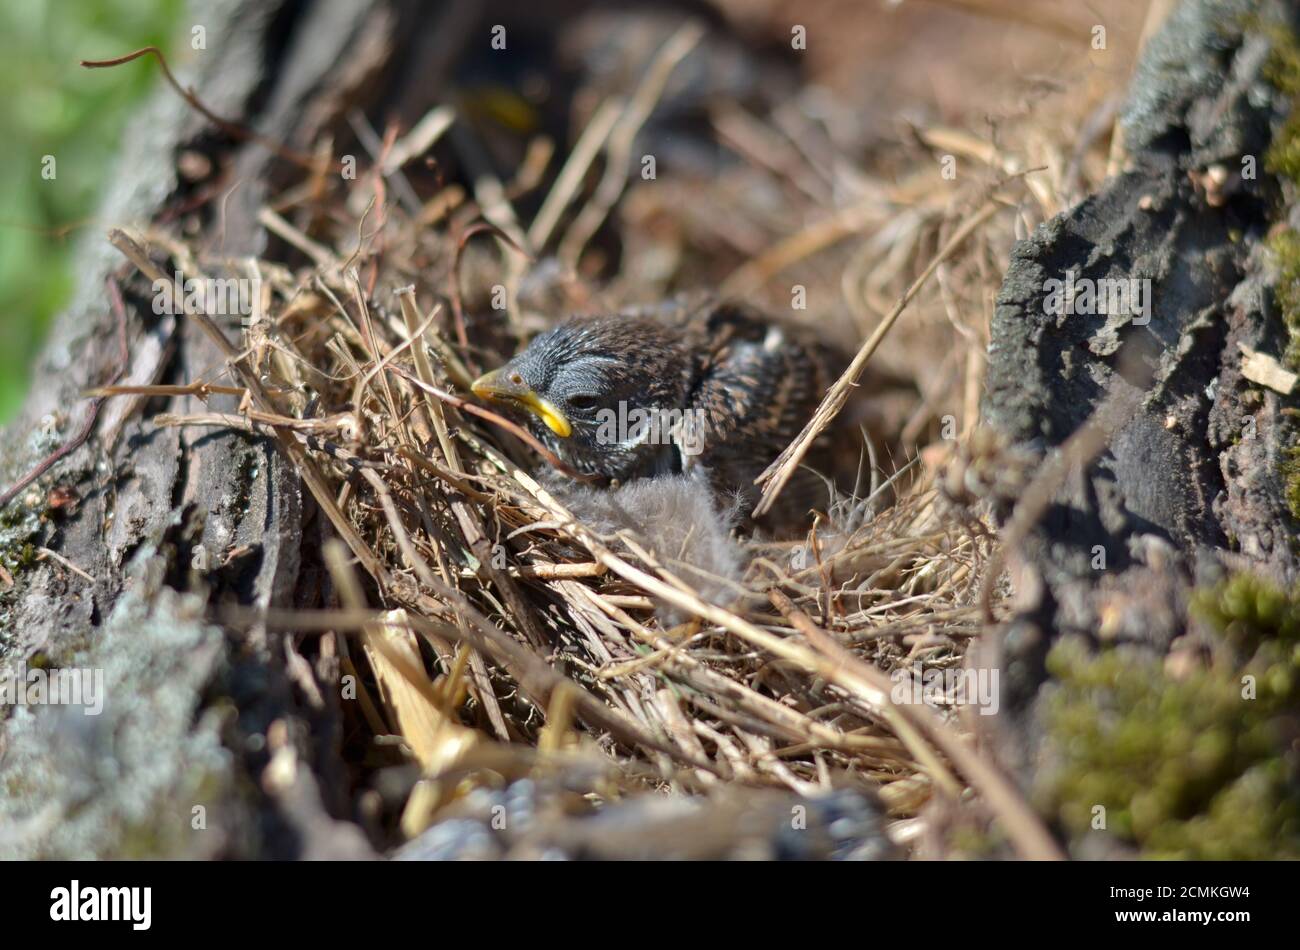 Casa passera - Passer domesticus. Sparrow accoccolato seduto nel nido. Profondità di campo poco profonda, primo piano. Foto Stock